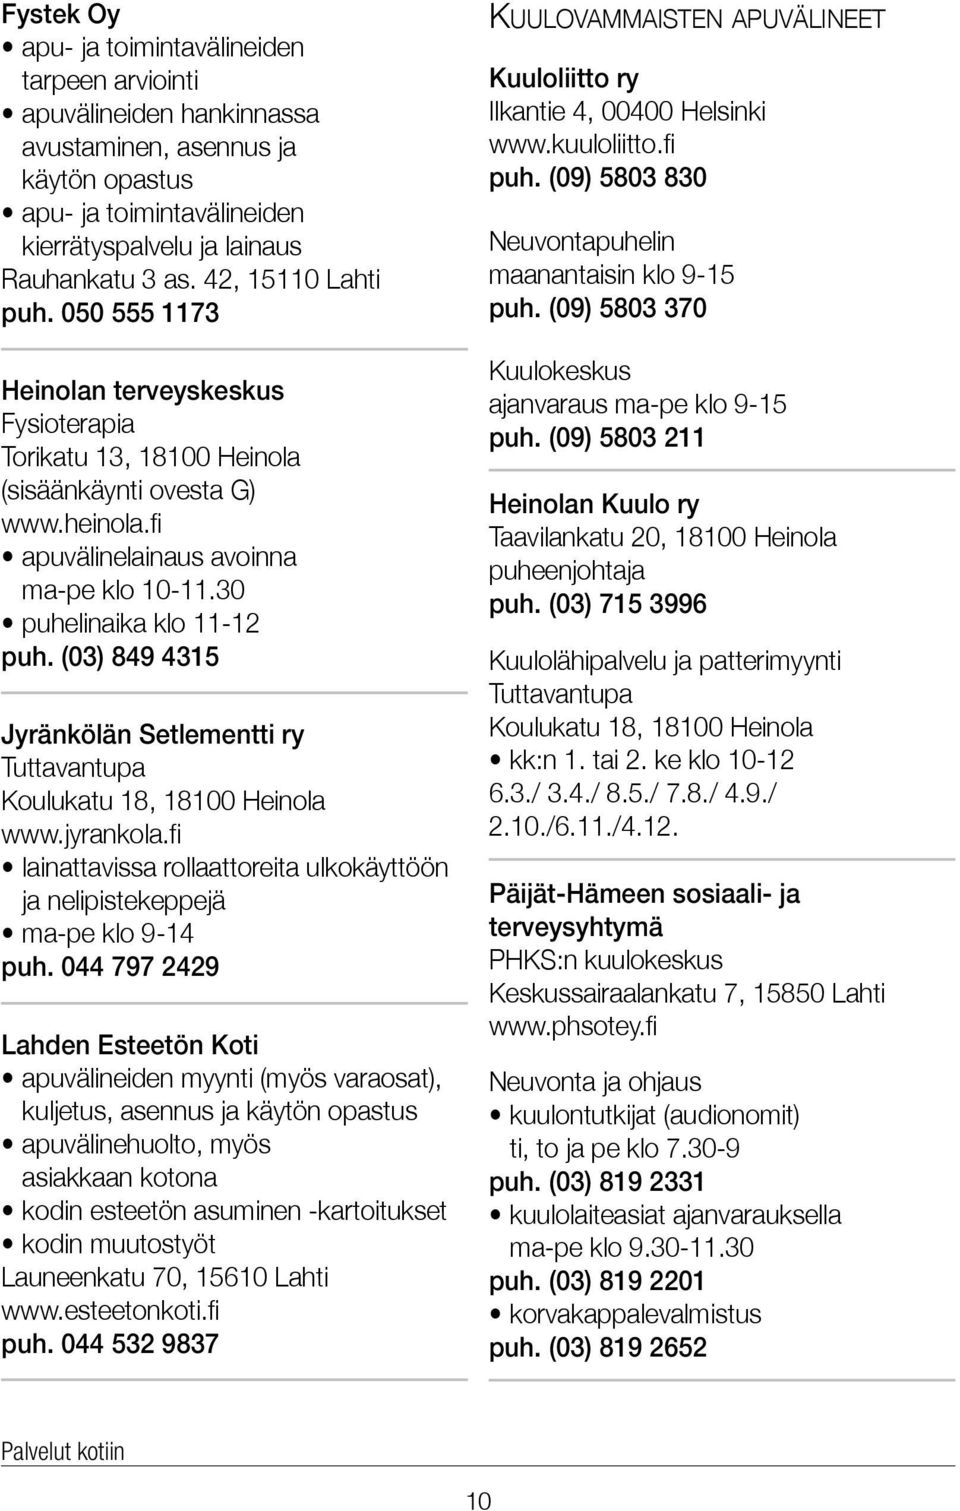 30 puhelinaika klo 11-12 puh. (03) 849 4315 Jyränkölän Setlementti ry Tuttavantupa Koulukatu 18, 18100 Heinola www.jyrankola.